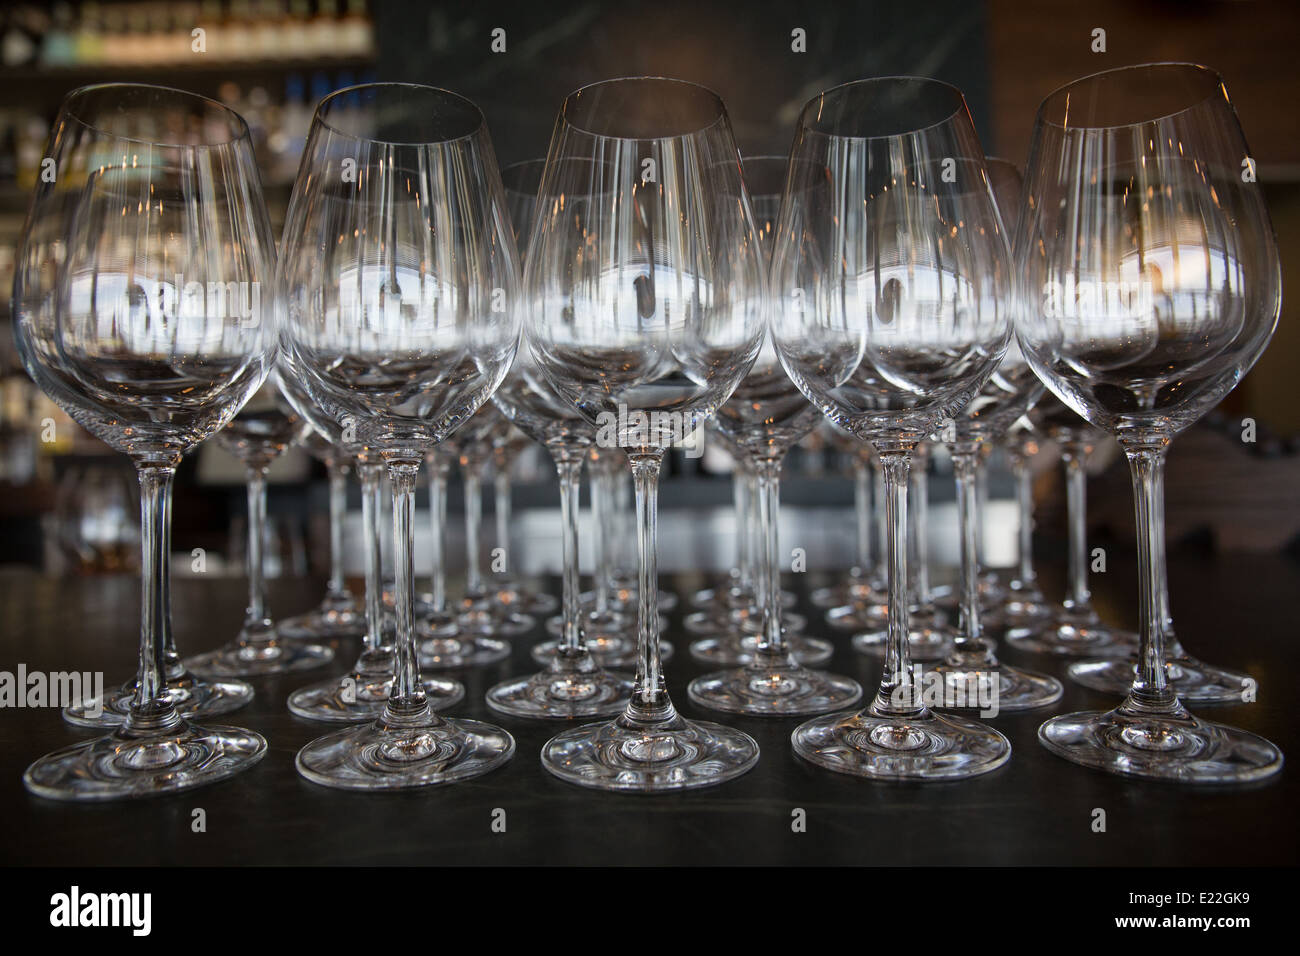 empty wine glasses Stock Photo